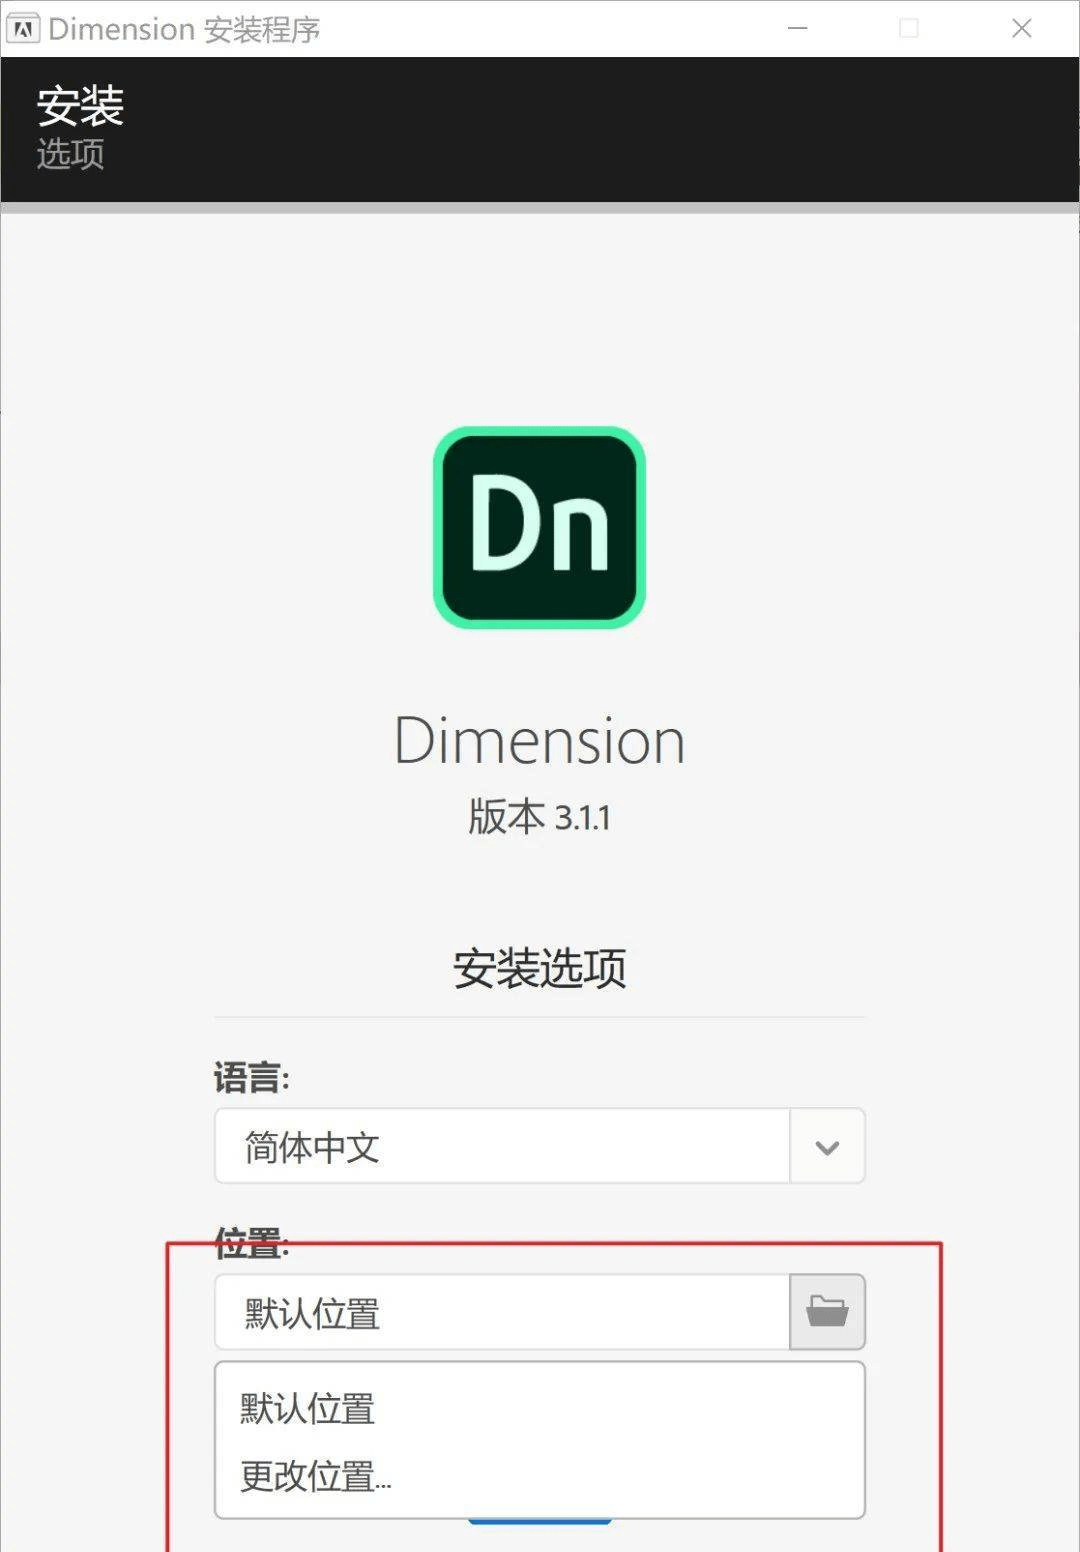 人渣下载免费中文版苹果:Adobe Dimension最新中文版安装激活教程 2020软件免费下载及安装-第4张图片-太平洋在线下载